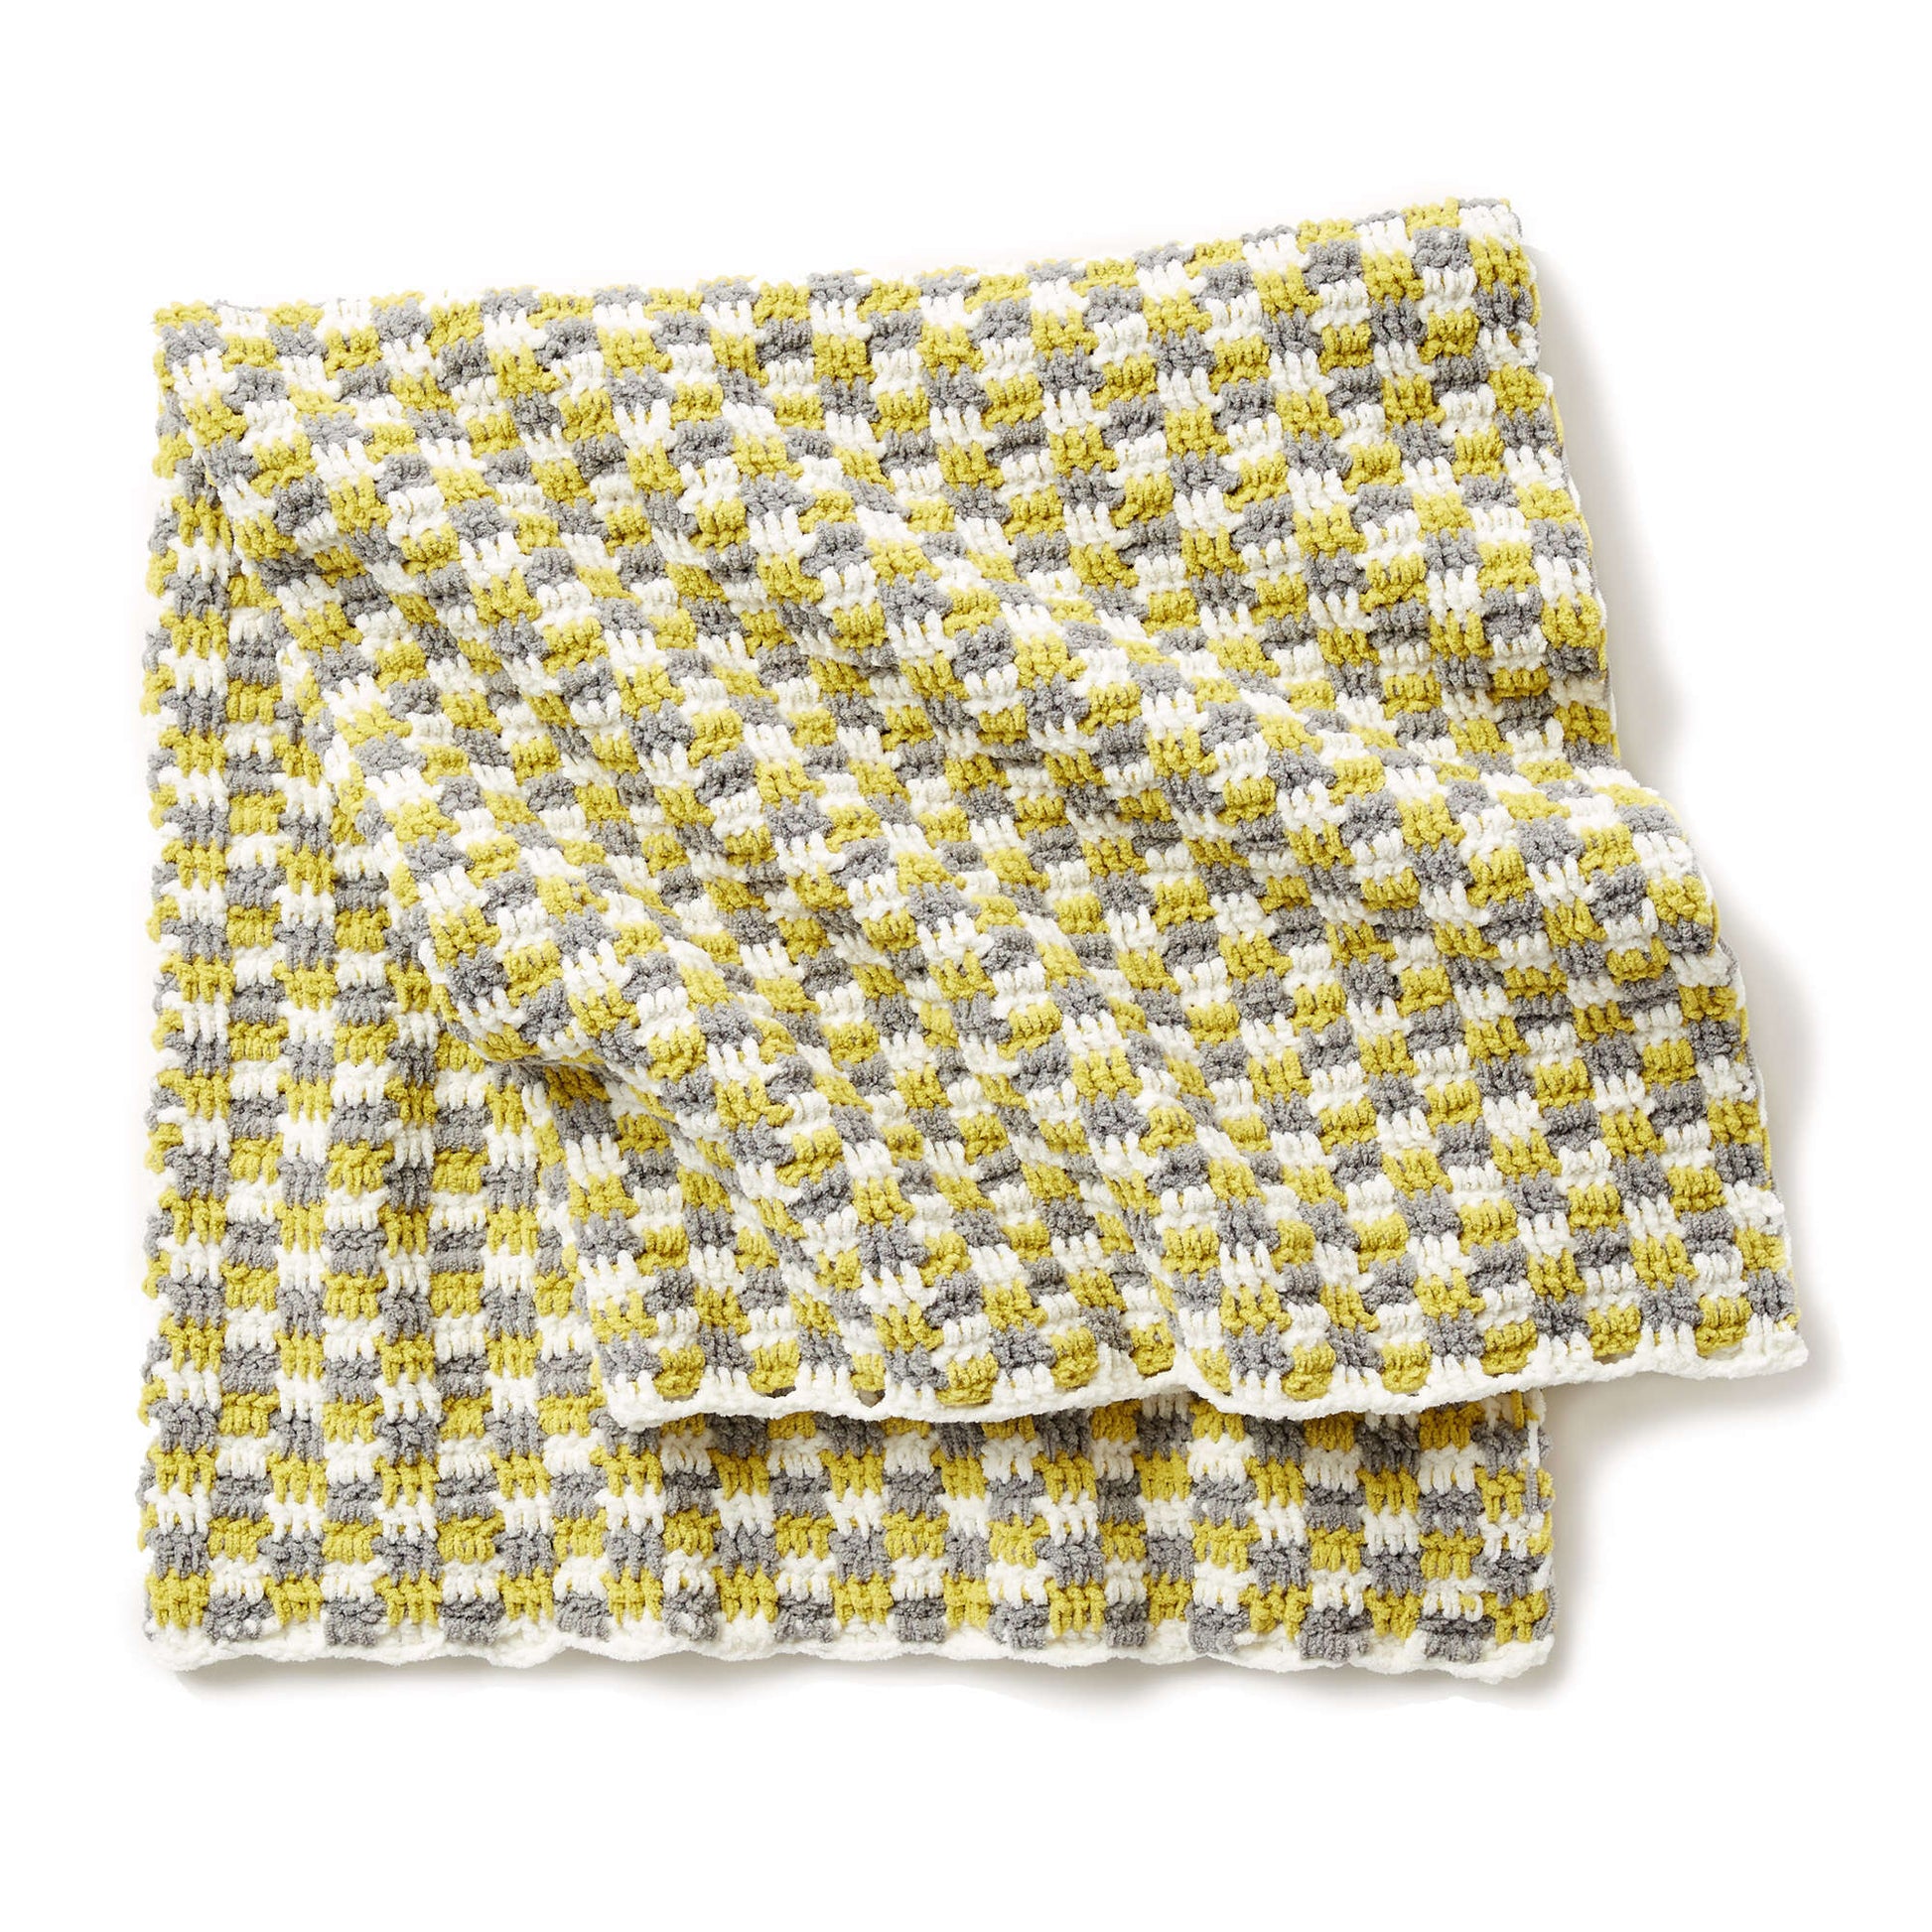 Bernat Checker Crochet Baby Blanket Crochet Blanket made in Bernat Baby Blanket yarn